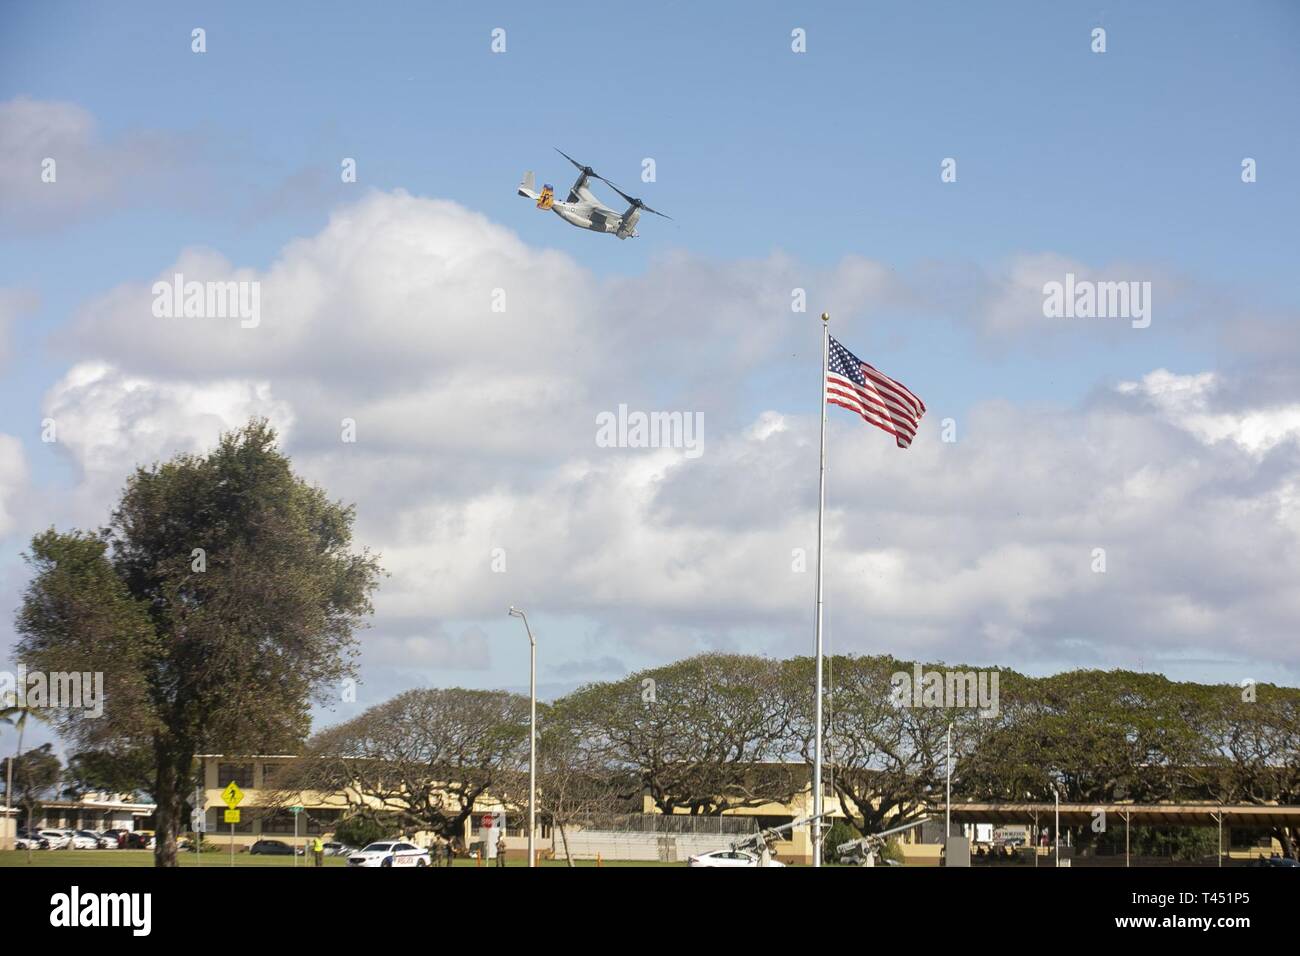 Une MV-22B hélicoptère à rotors basculants Osprey affectés à l'escadron 268 à rotors basculants moyen marin survole pendant un aéronef tombé scénario à la zone d'atterrissage 216 Base du Corps des Marines, Hawaii, le 27 février, 2019. Les Marines américains avec des armes Company, 2e Bataillon, 3e Régiment de Marines et VMM-268 avec le A-10 Thunderbolt II attaque aéronefs affectés au 442e Escadre de chasse de Whiteman Air Force Base, Ohio conduite formation composé d'un recouvrement tactique simulé d'aéronefs et un scénario du personnel de recherche et sauvetage de combat scénario. Banque D'Images